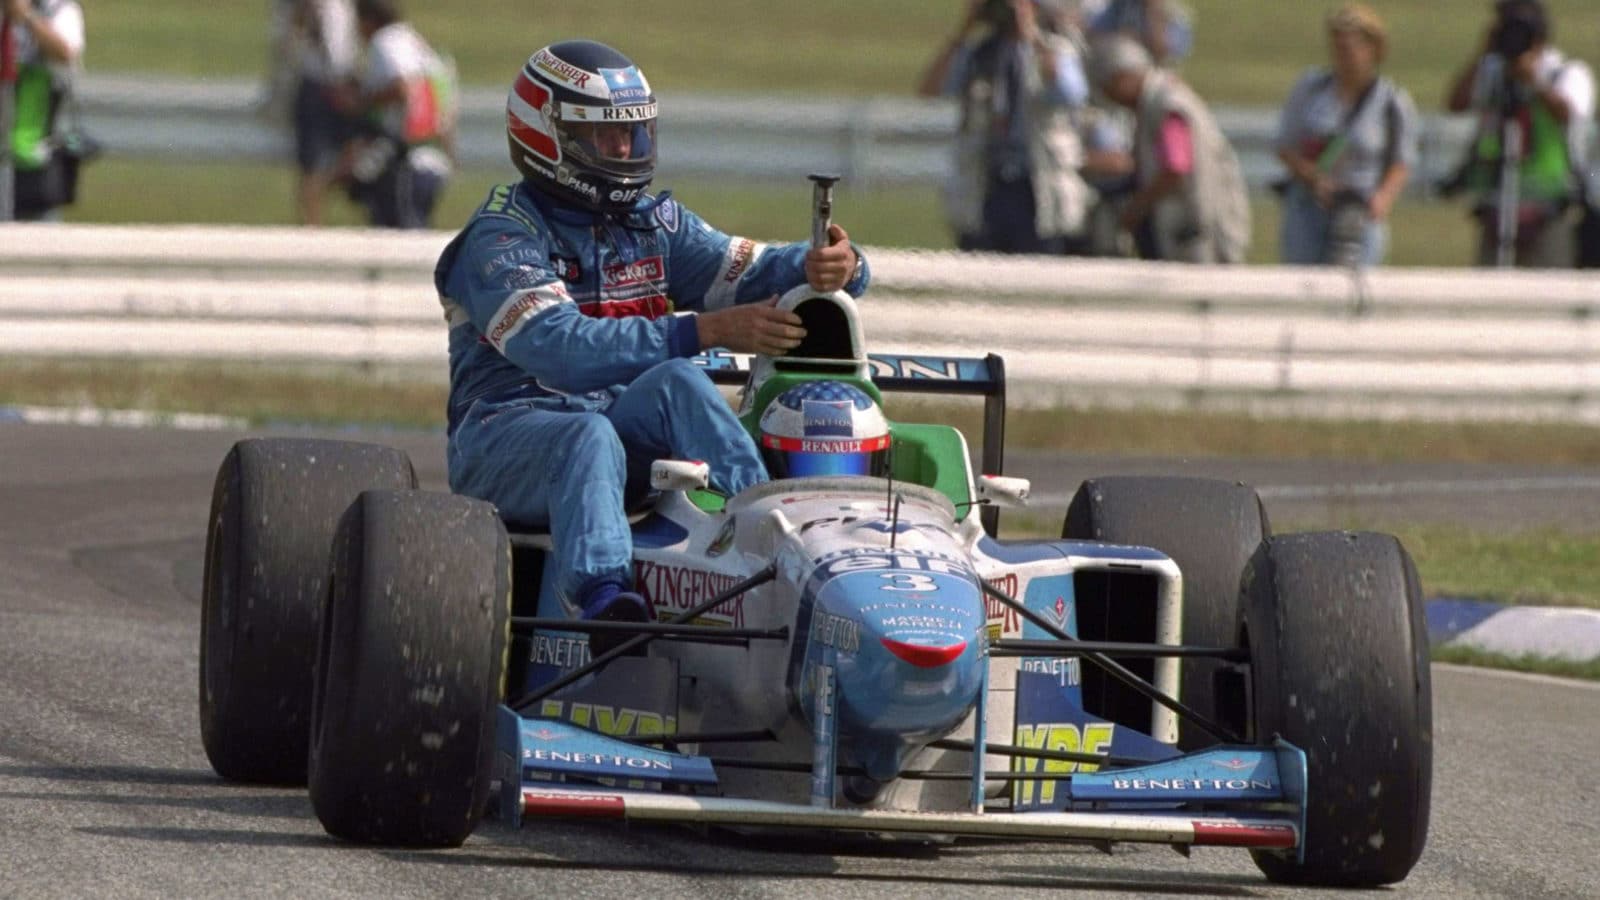 Gerhard-Berger-rides-on-Benetton-of-Jean-Alesi